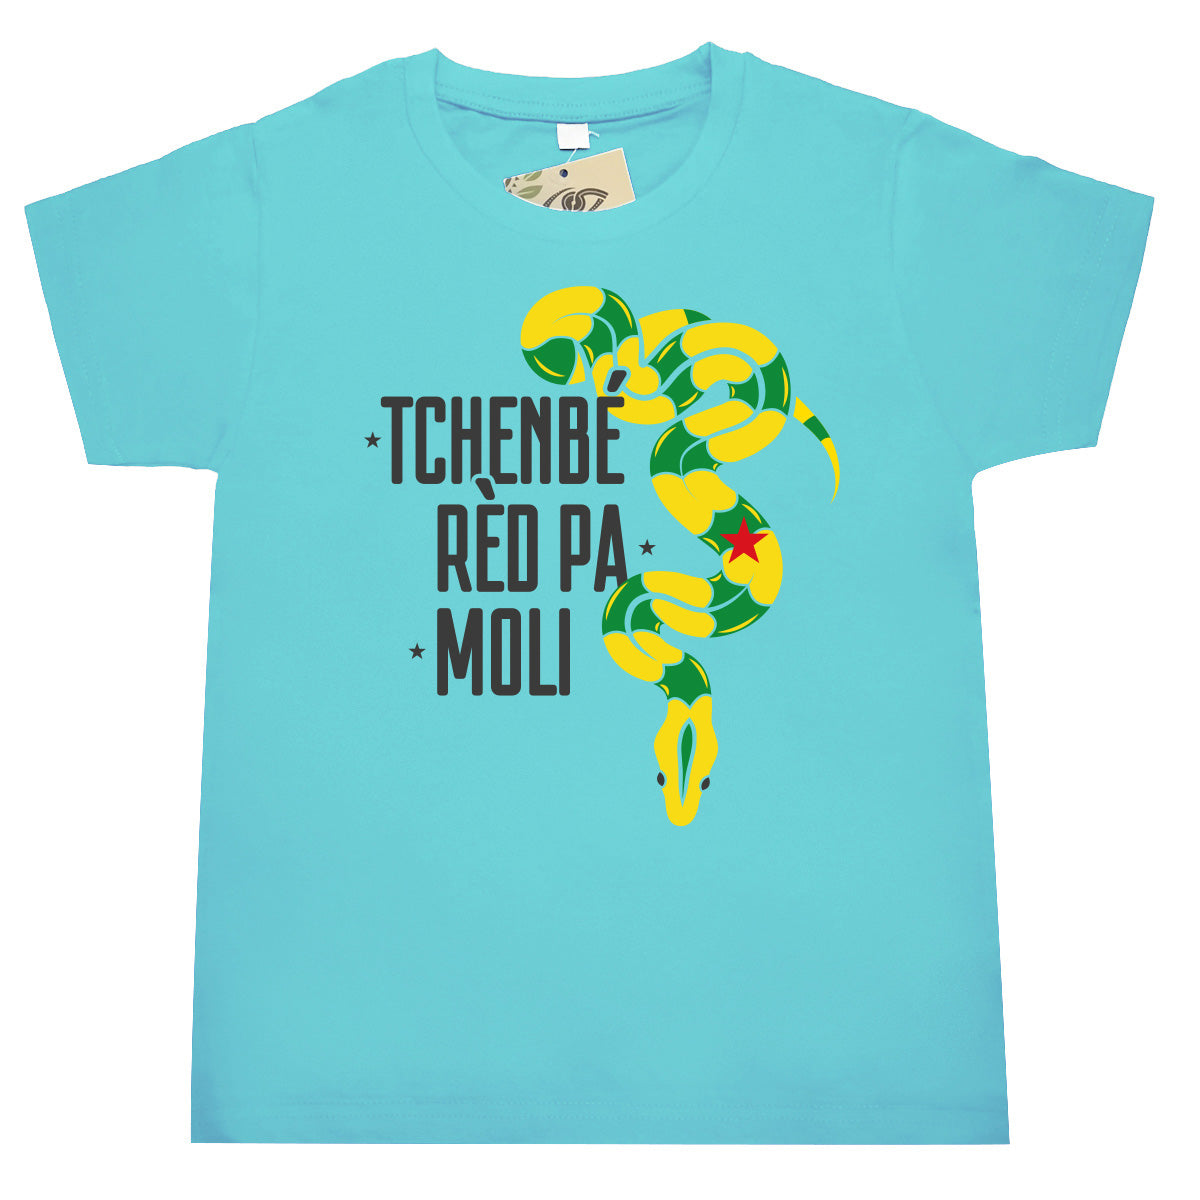 bat wey - T-shirt enfant - Tchenbe red boa - Guyane - Turquoise